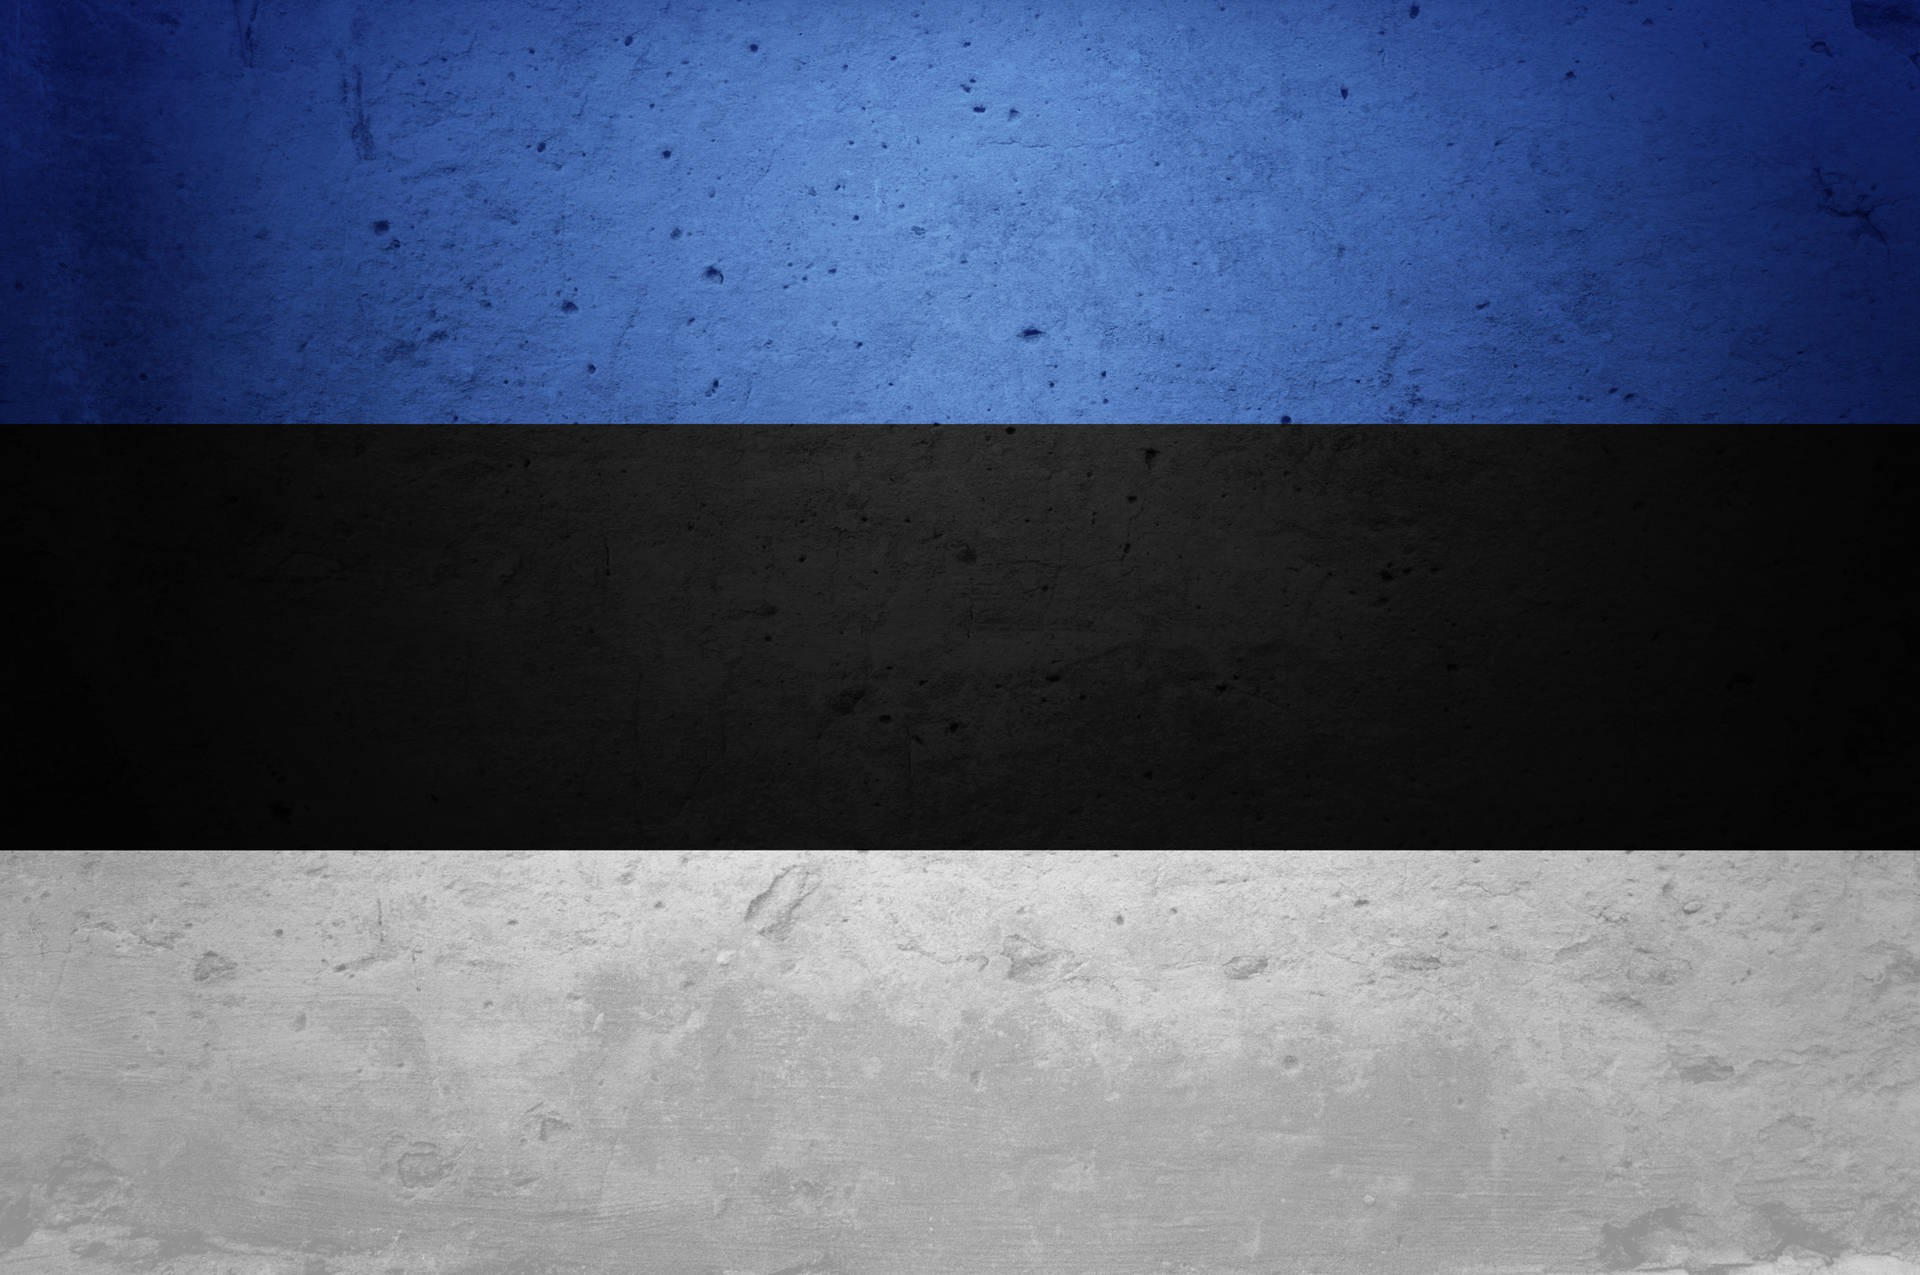 Plano De Fundo Da Estônia